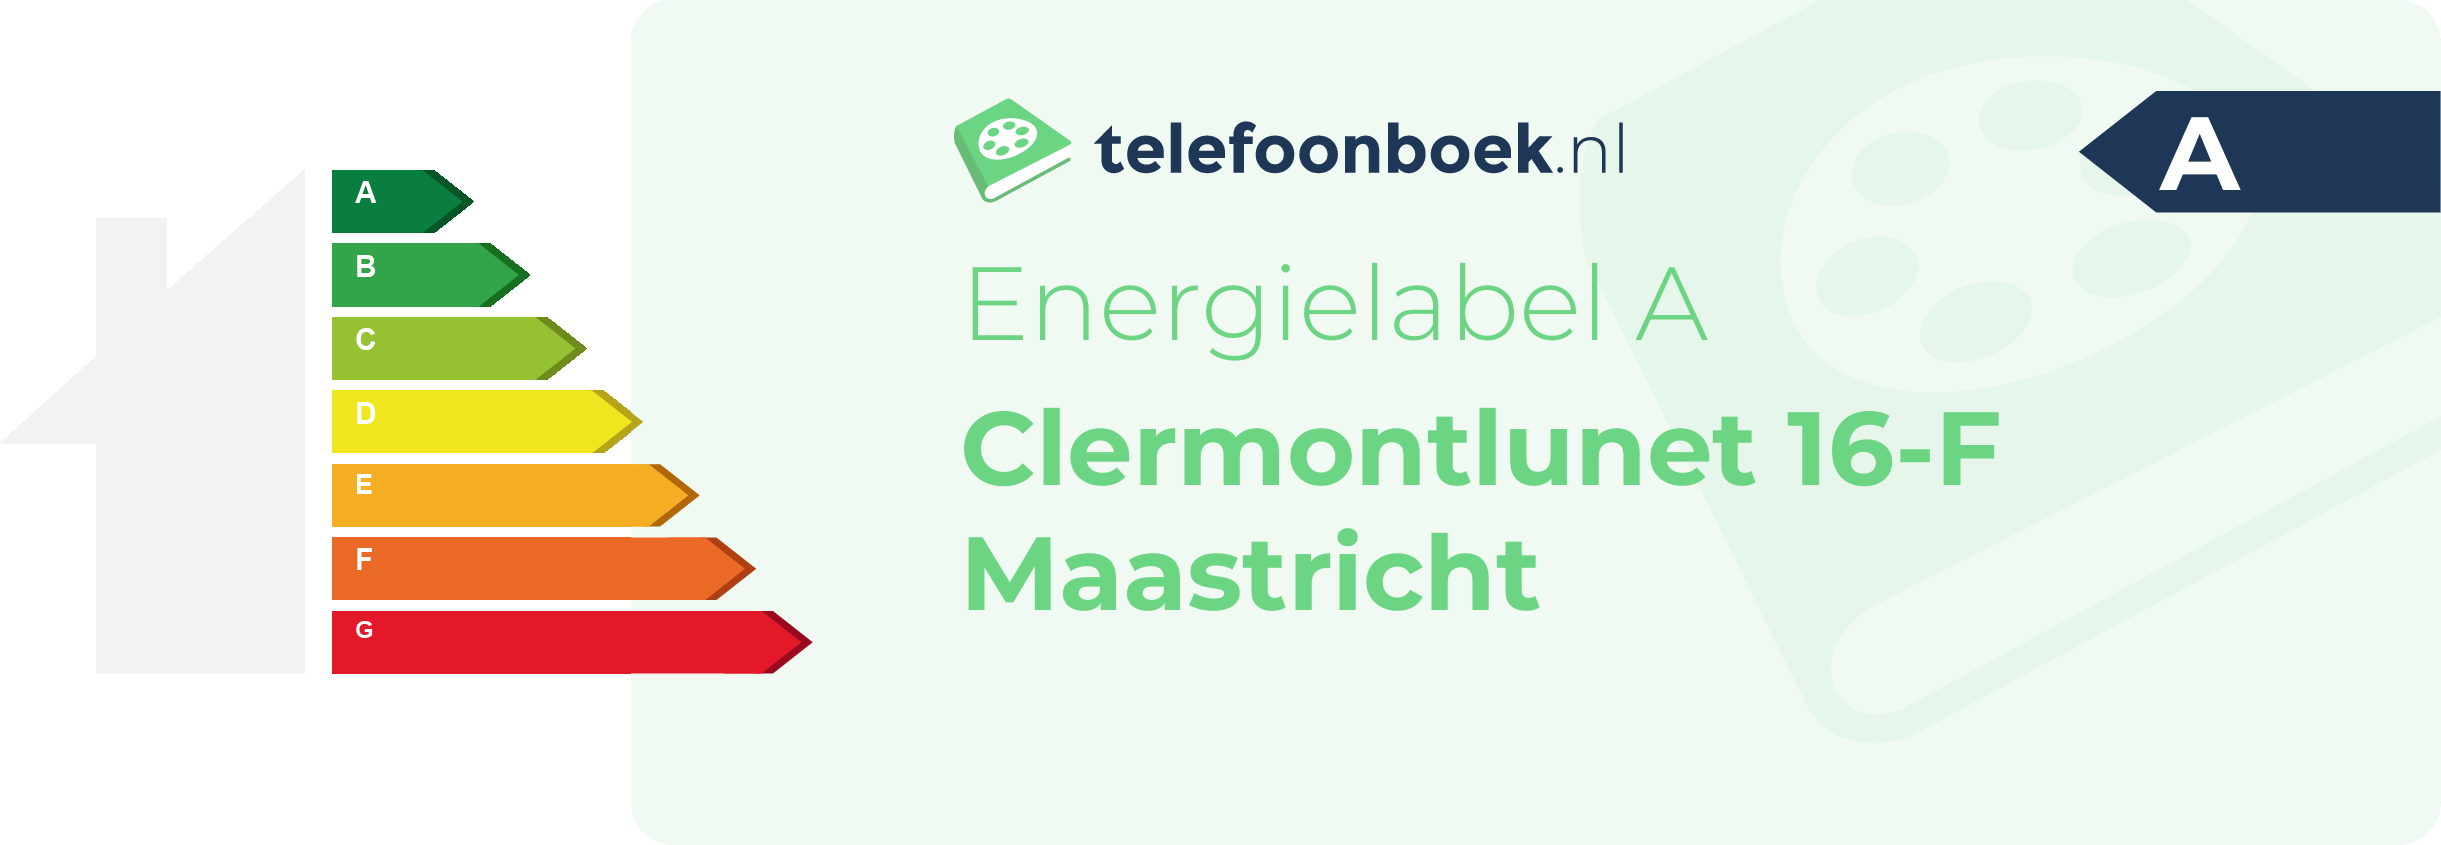 Energielabel Clermontlunet 16-F Maastricht